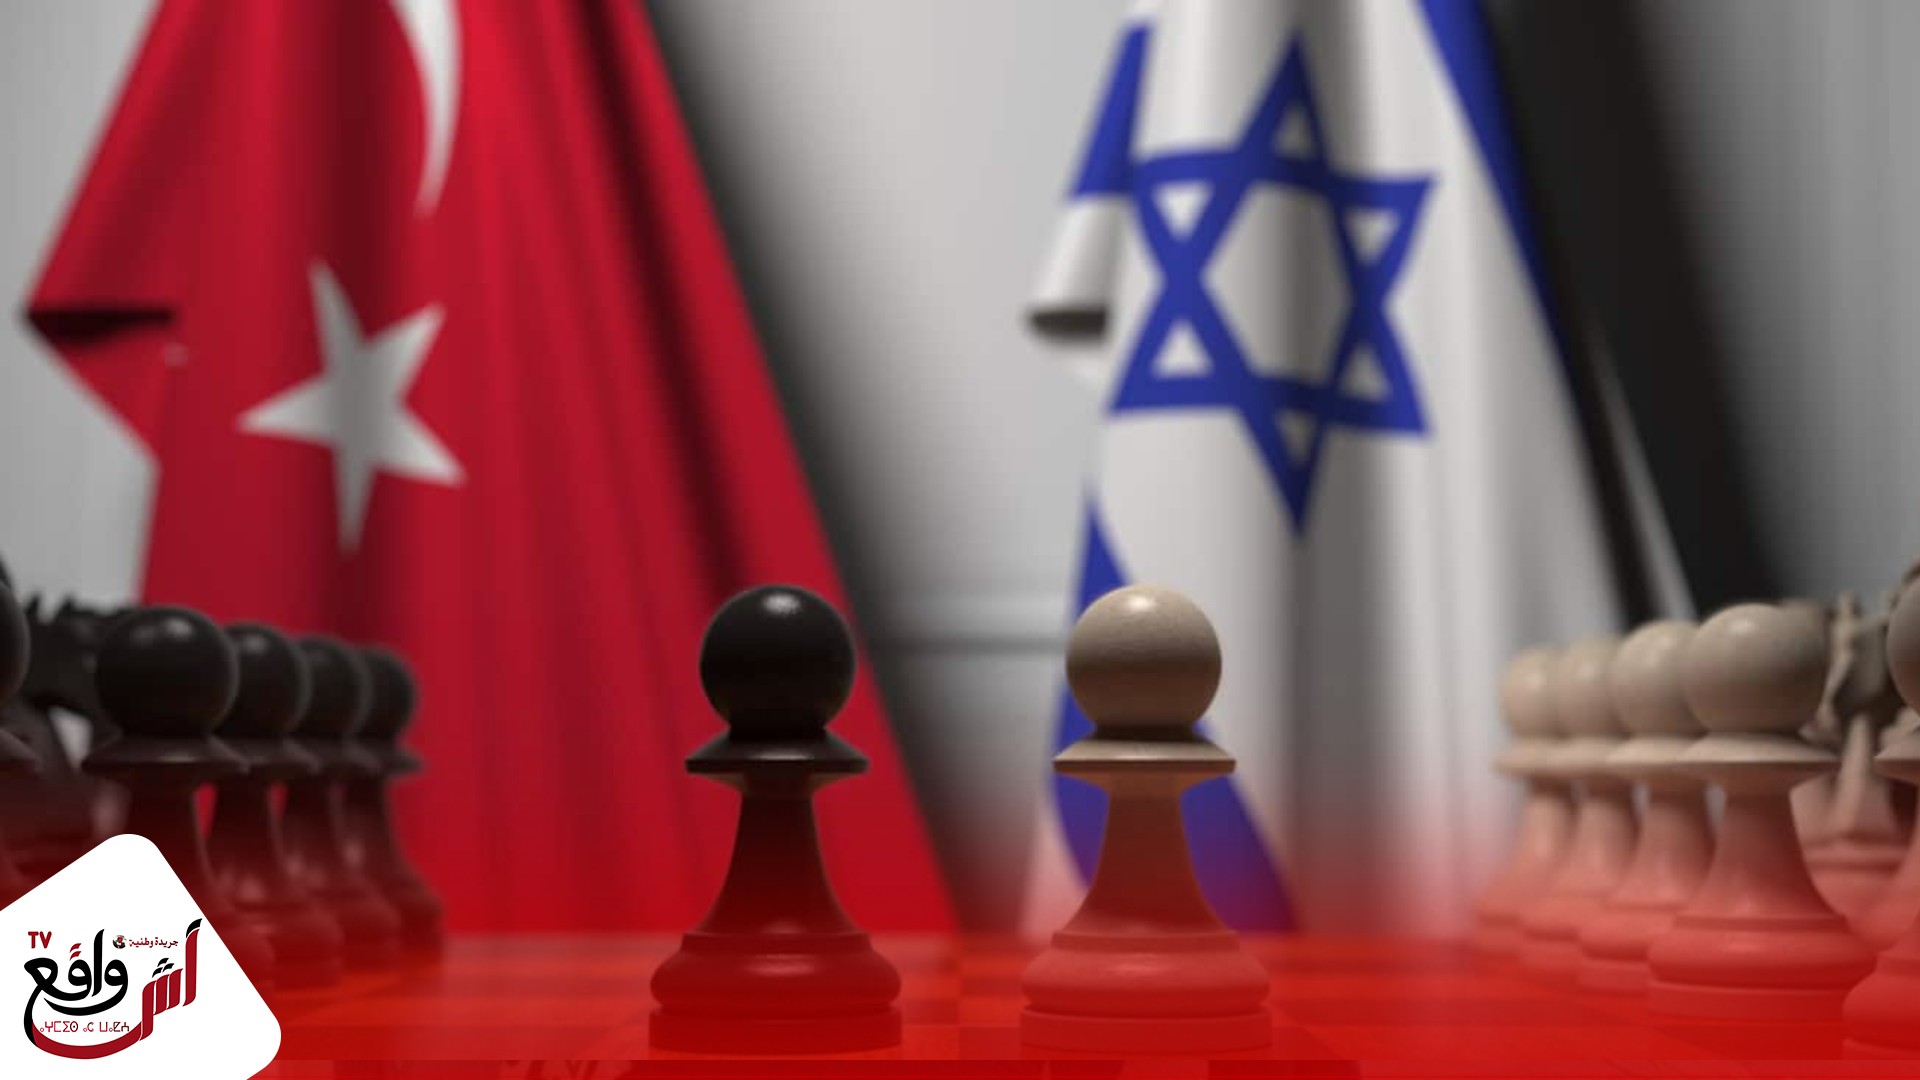 بين أنقرة وتل ابيب .. أردوغان يطمح لعلاقة أفضل مع إسرائيل